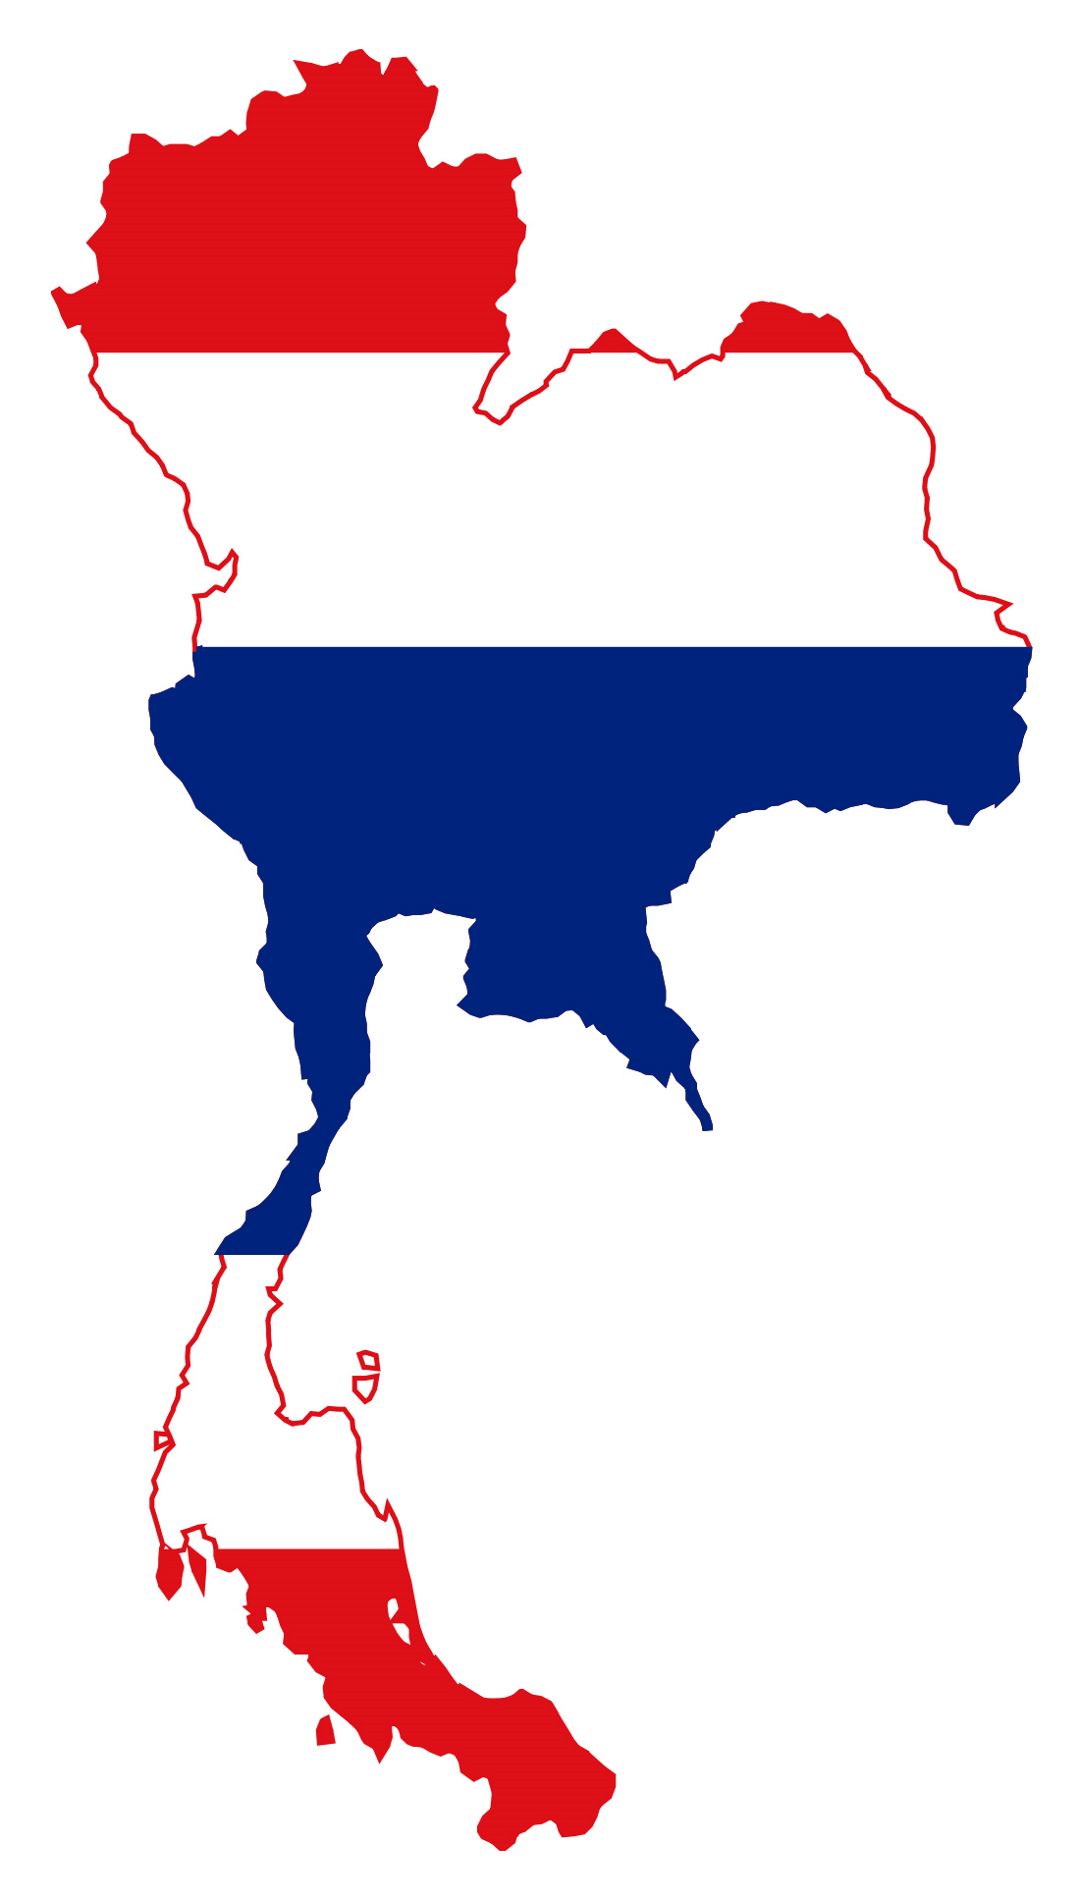 Detallado mapa de bandera de Tailandia